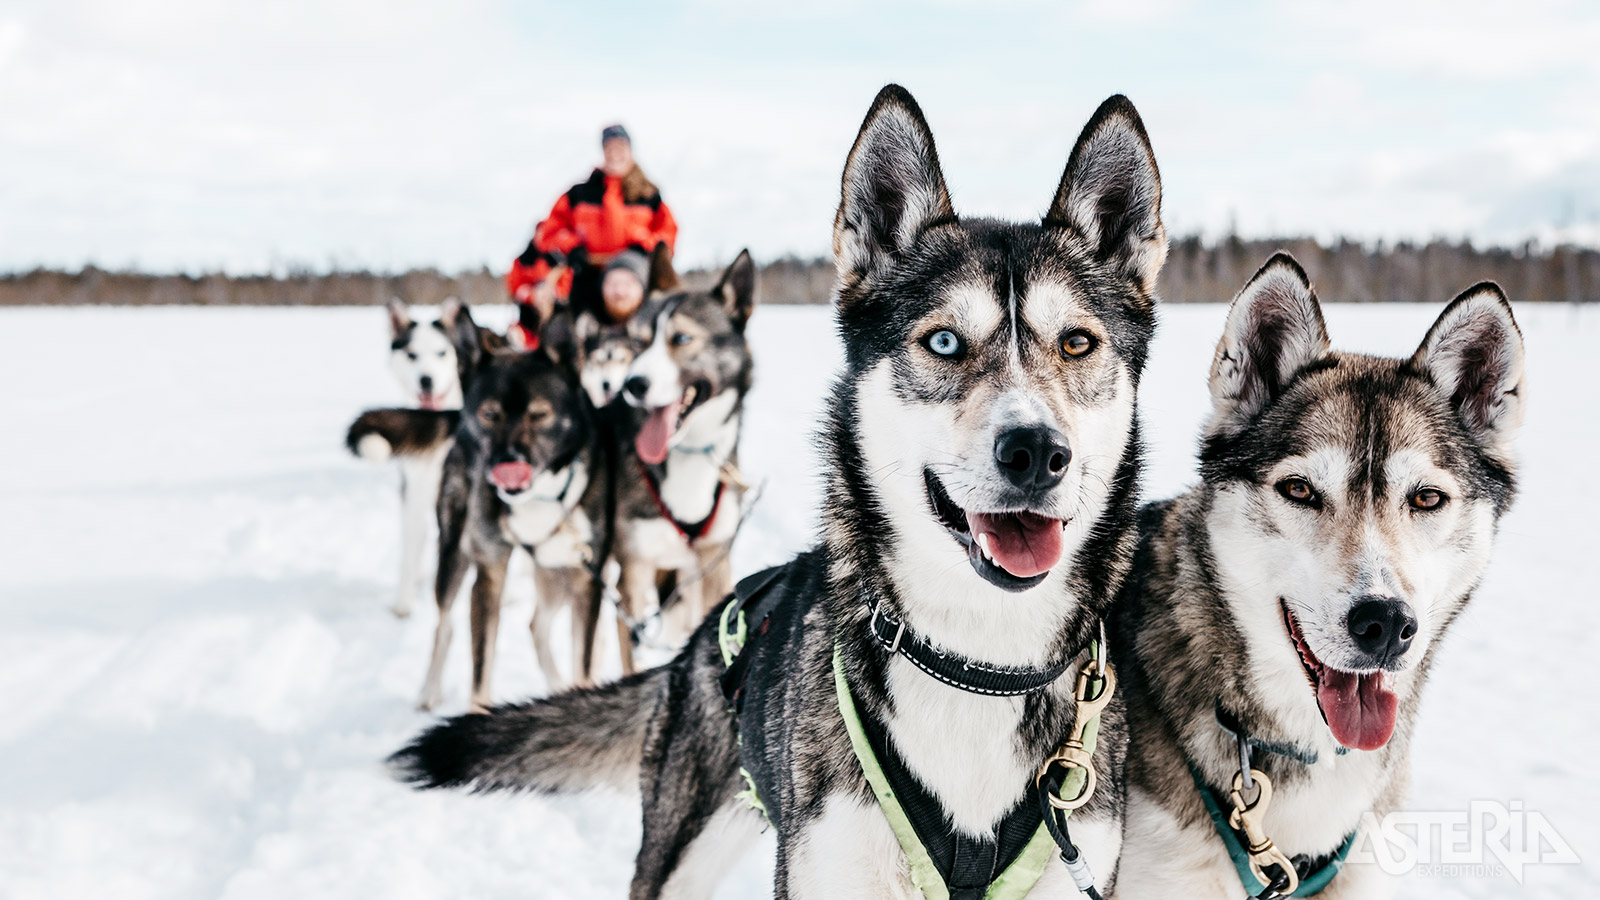 Trek de Finse natuur in met de husky’s en geniet van de stilte tijdens de tocht